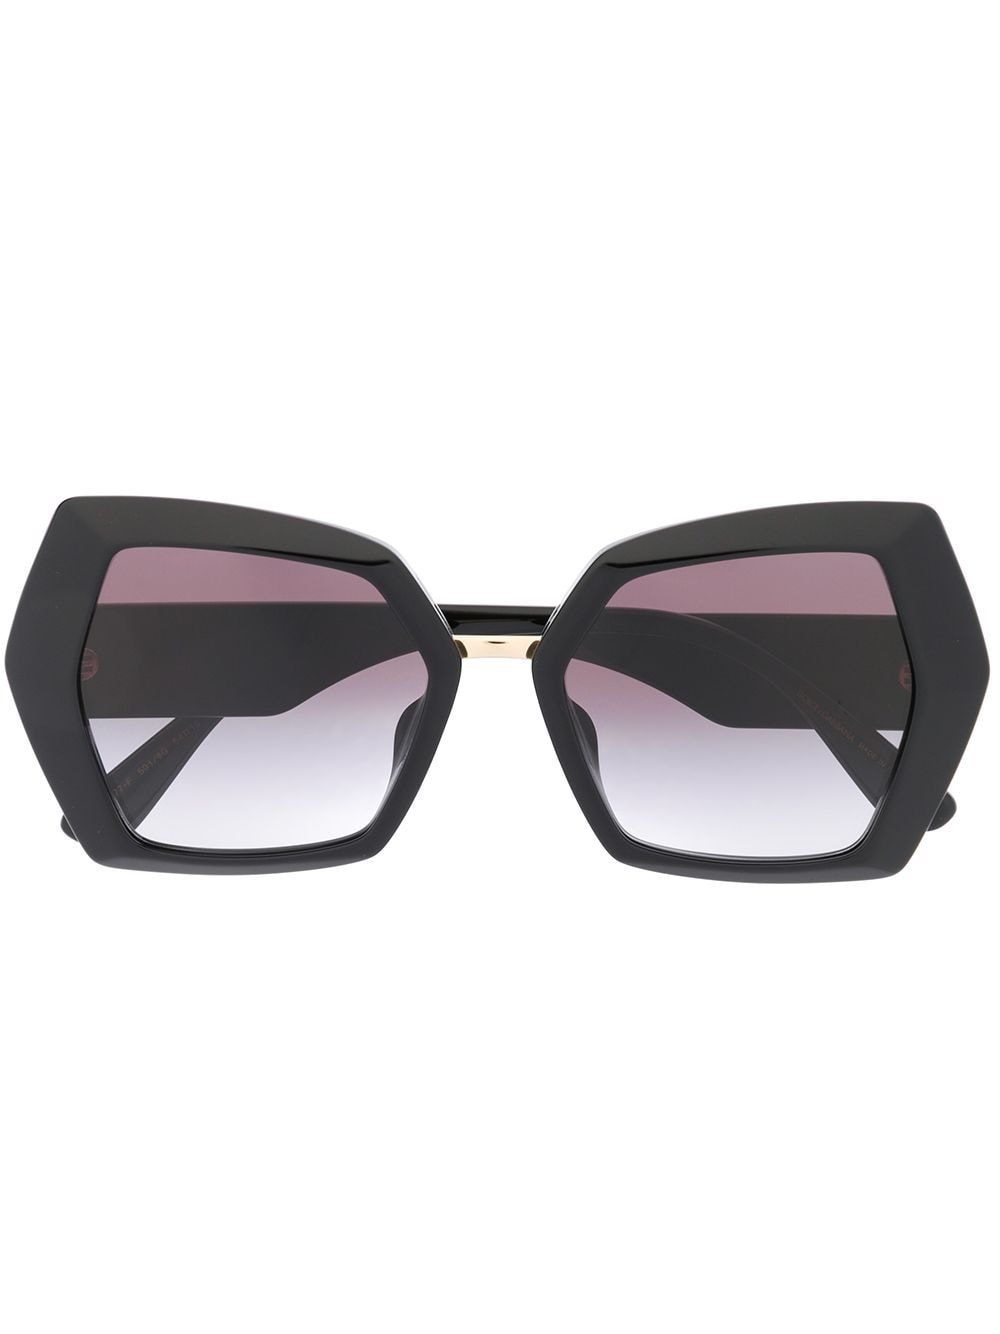 фото Dolce & gabbana eyewear солнцезащитные очки в массивной квадратной оправе